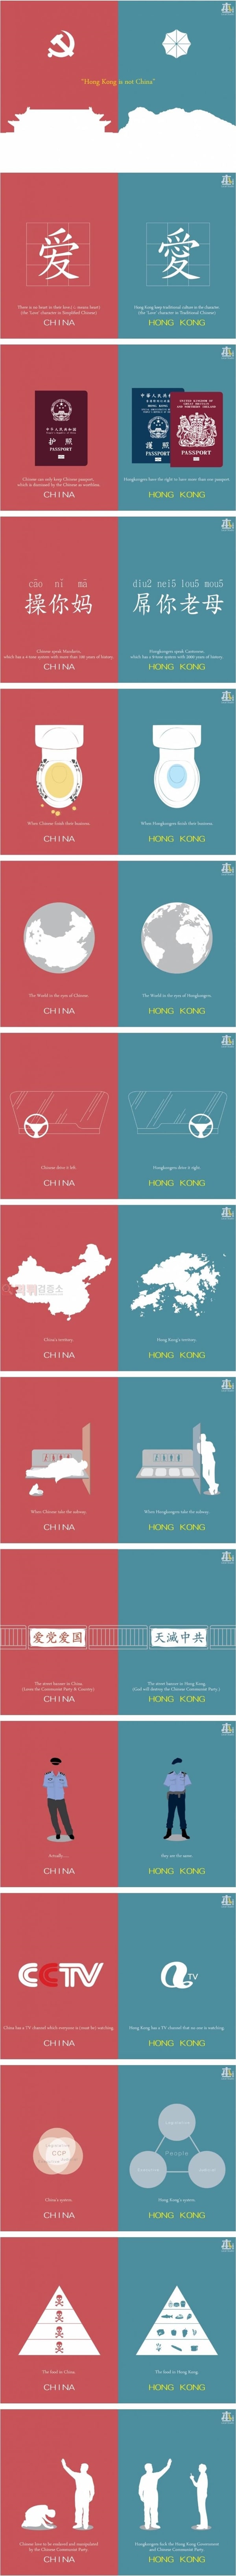 먹튀검증소 유머 홍콩과 중국의 차이